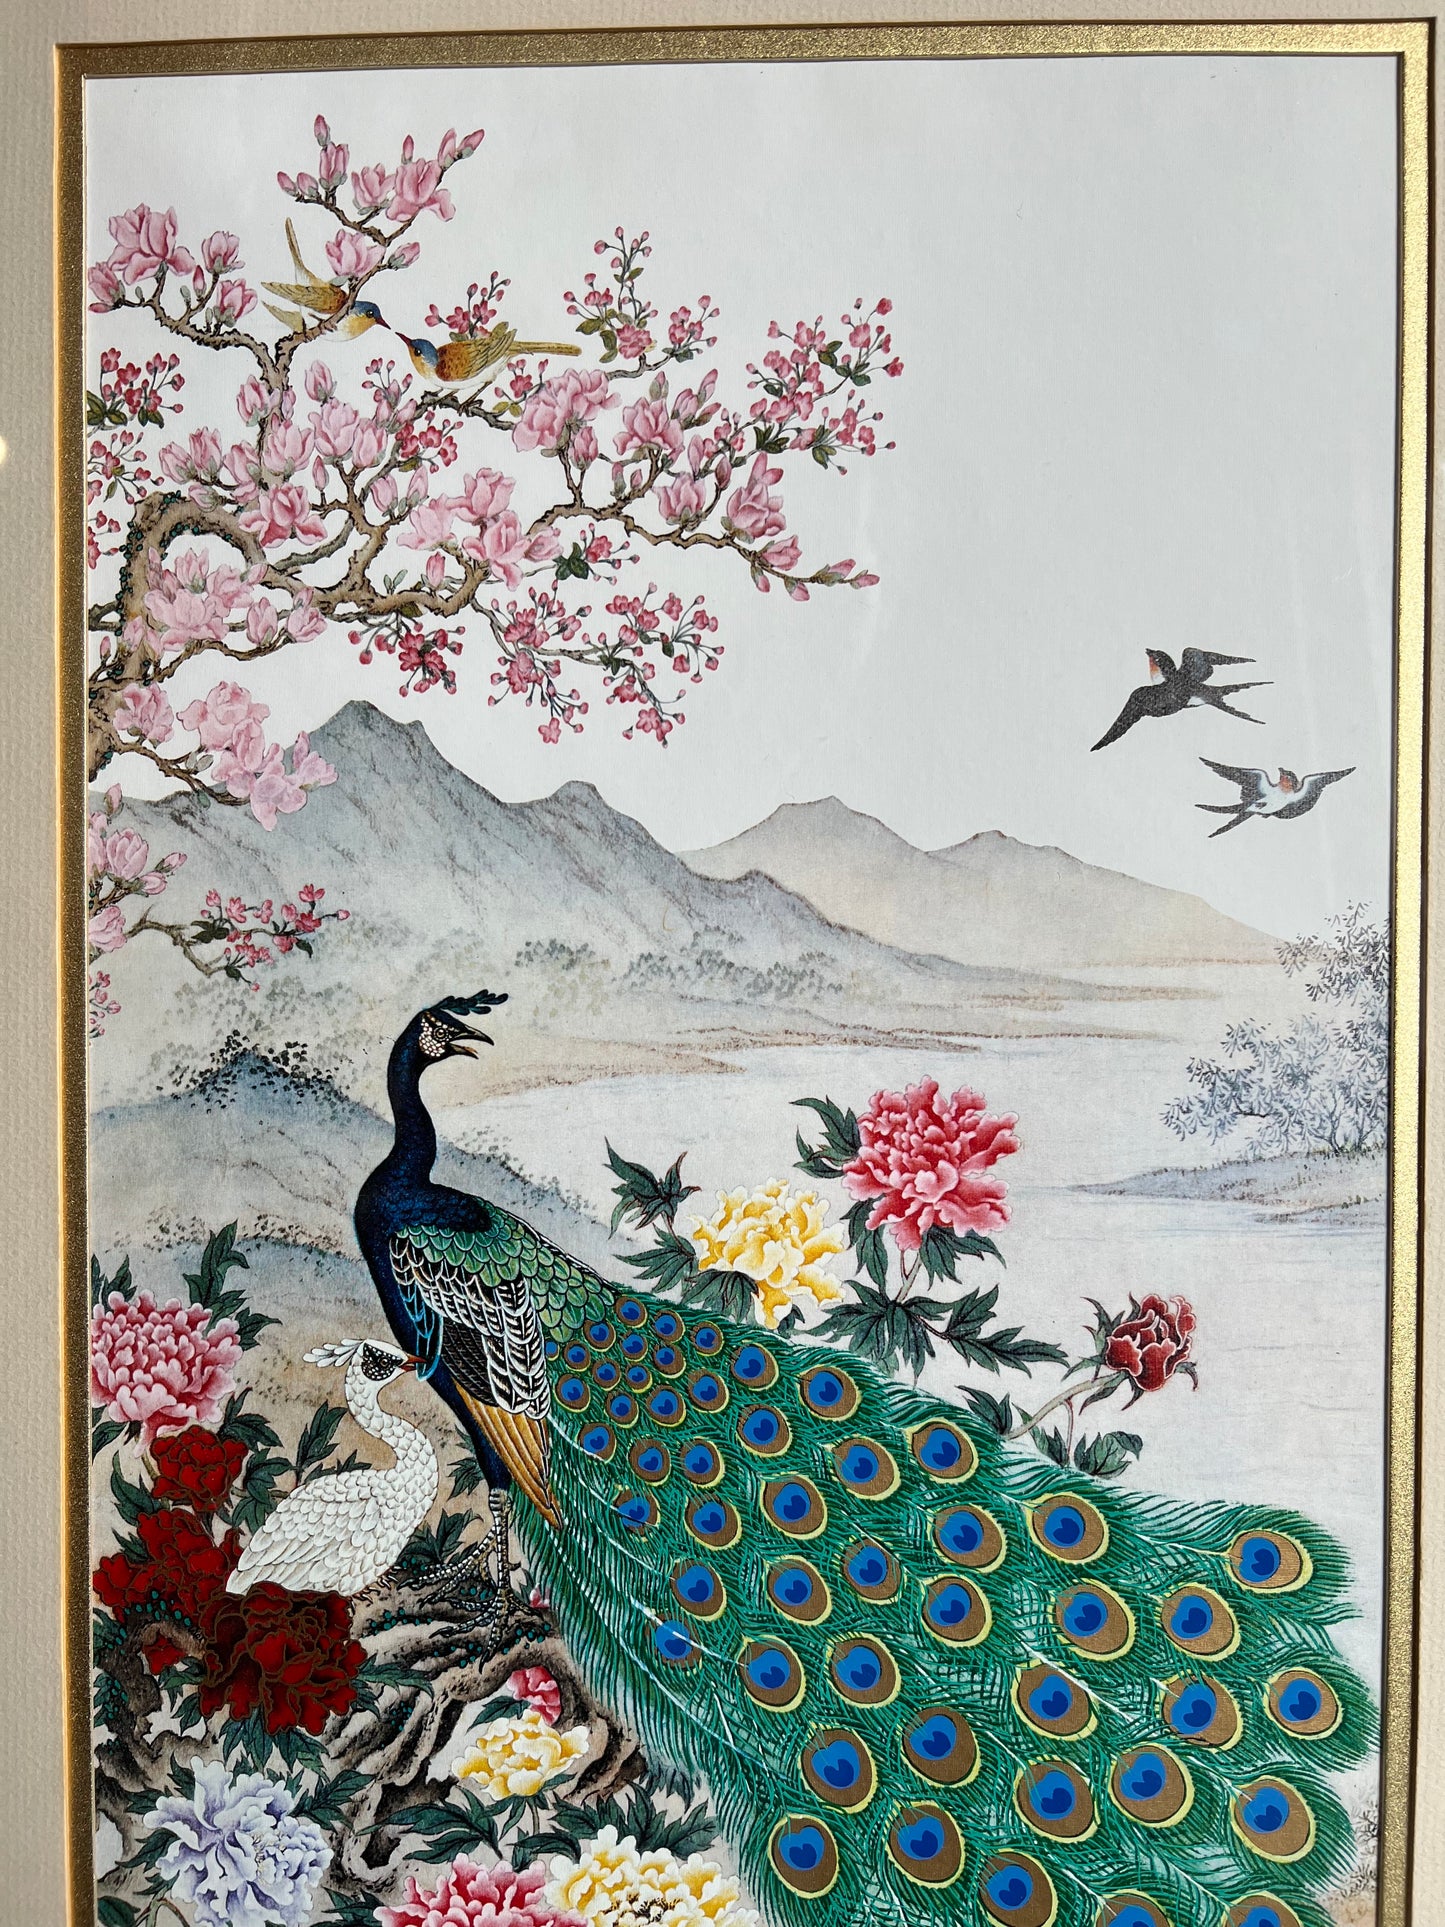 Wei Tseng Yang Framed Print "The Awakening of Spring" 17"x30"